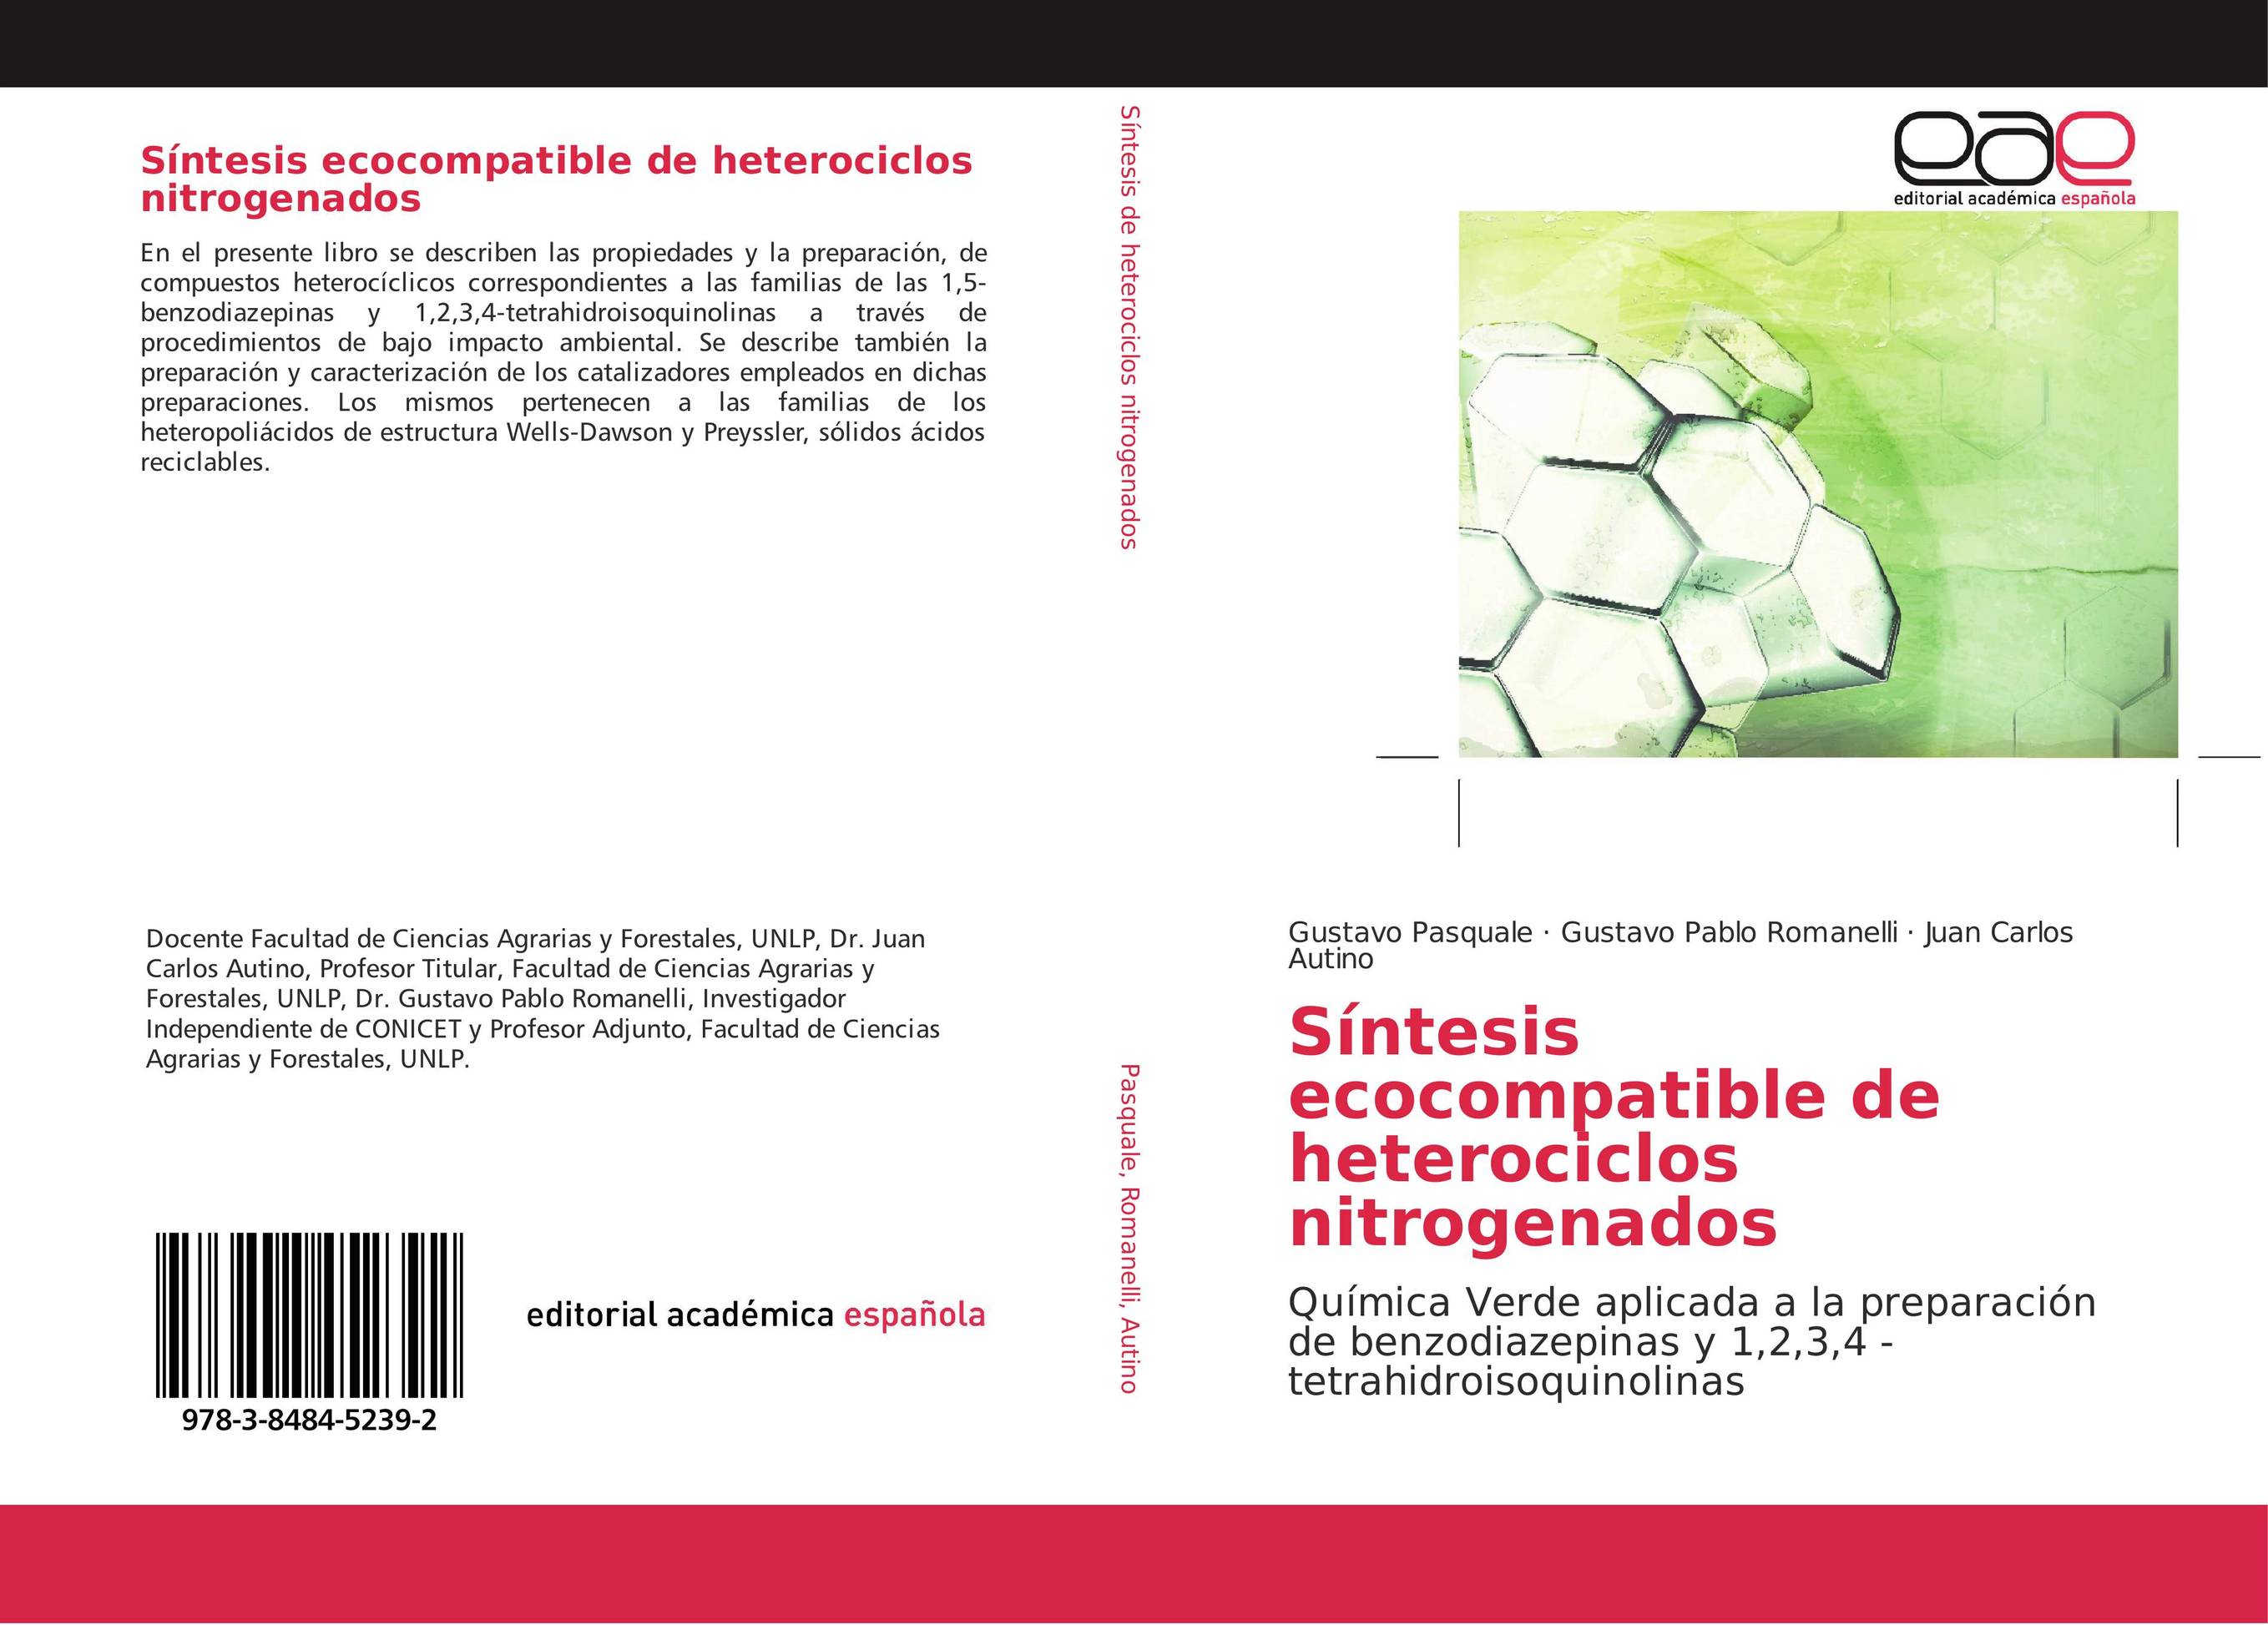 Síntesis ecocompatible de heterociclos nitrogenados